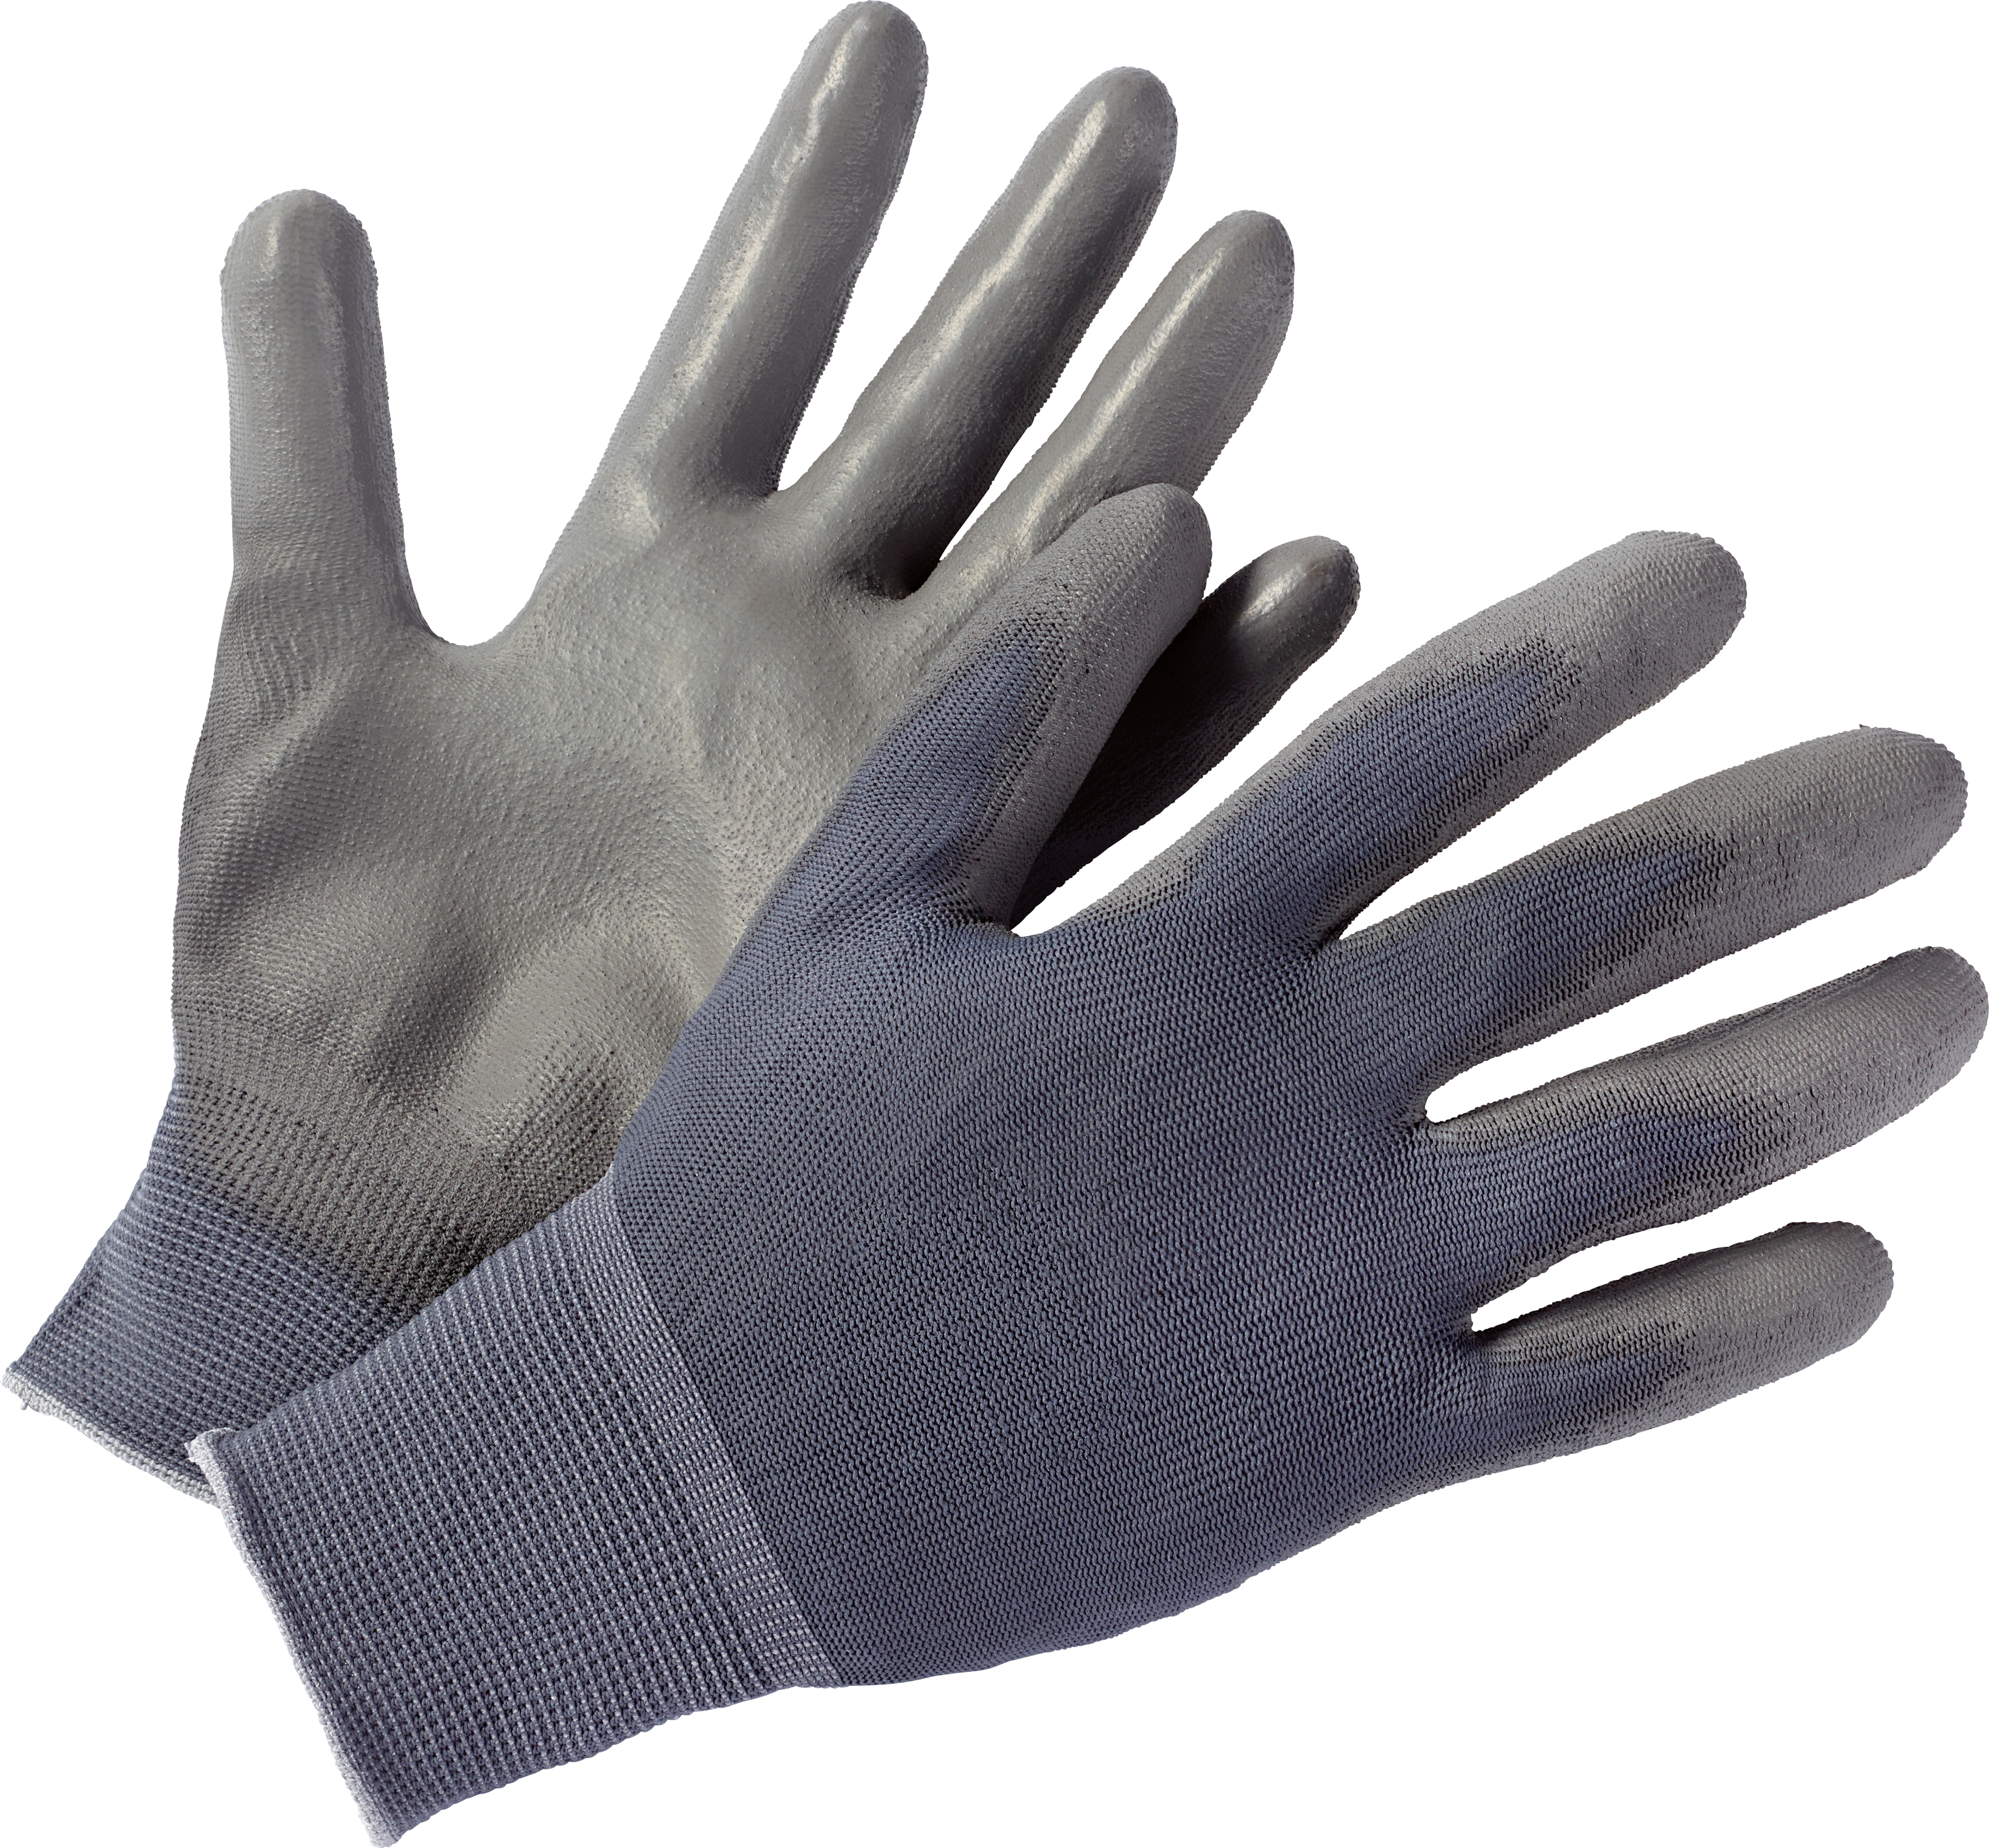 LUX Montage-Handschuhe PU Gr. 8 kaufen bei OBI